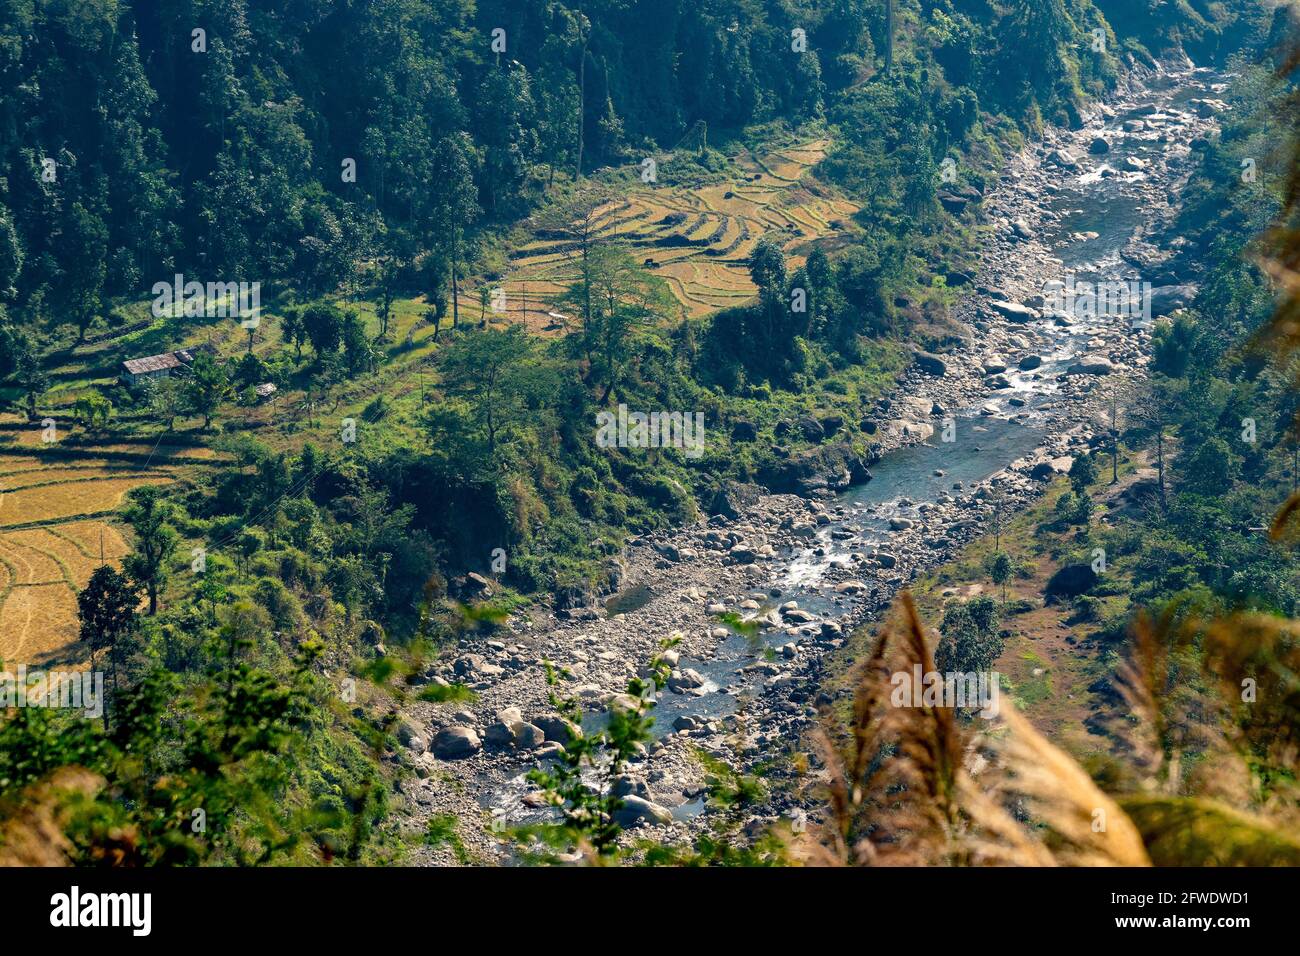 Vista dall'alto del fiume Joldhaka che scorre al di sotto del confine indiano del Bhutan con terreni agricoli sul lato. Immagine scattata a Jhalong, Bengala del Nord - Dooars Foto Stock